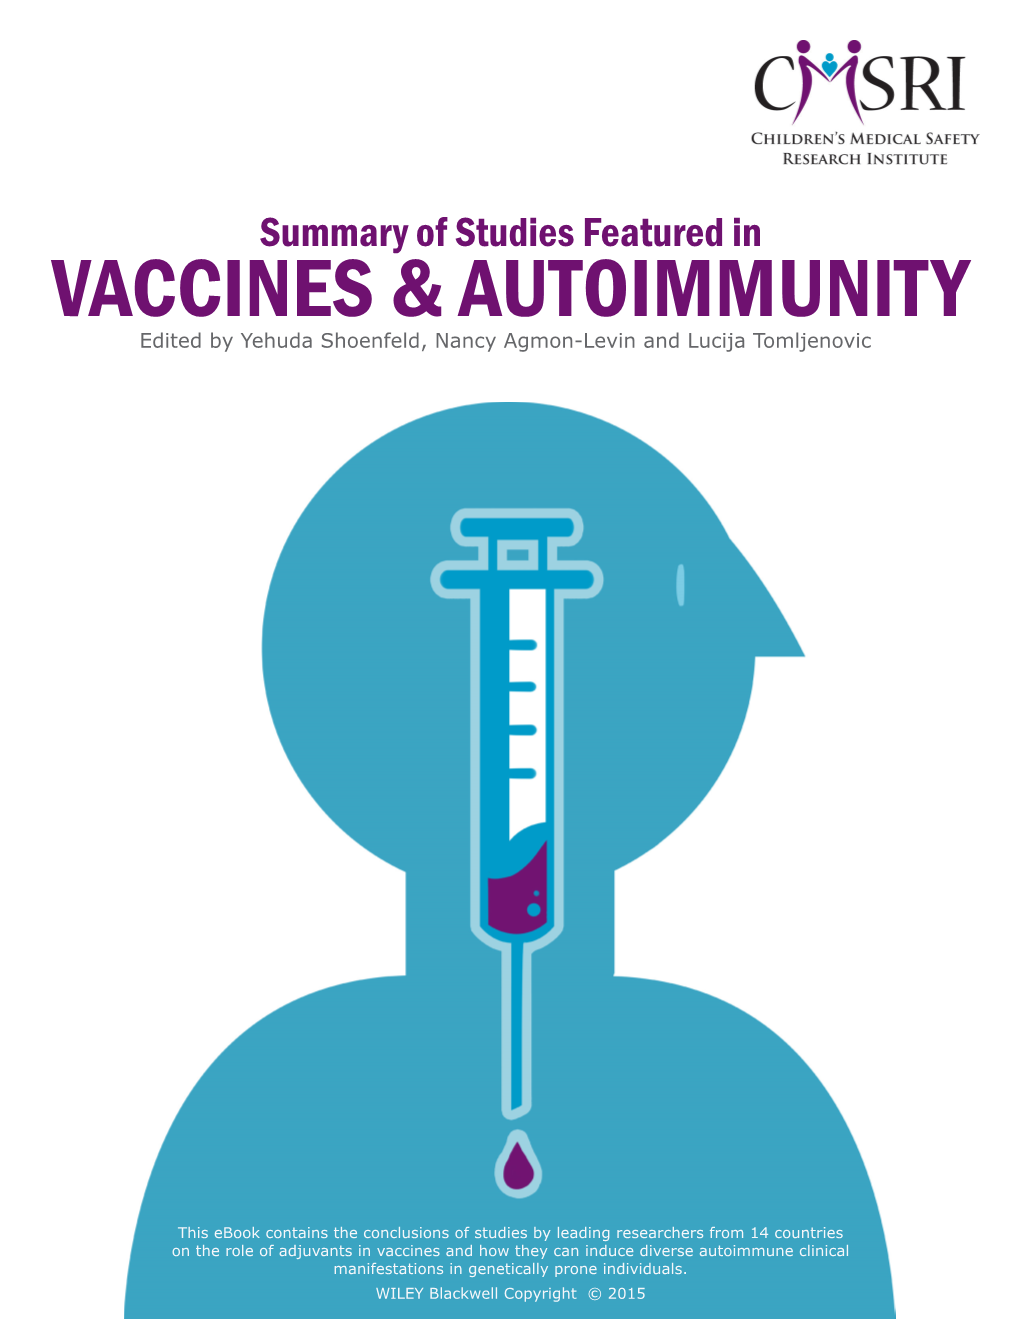 Vaccines & Autoimmunity